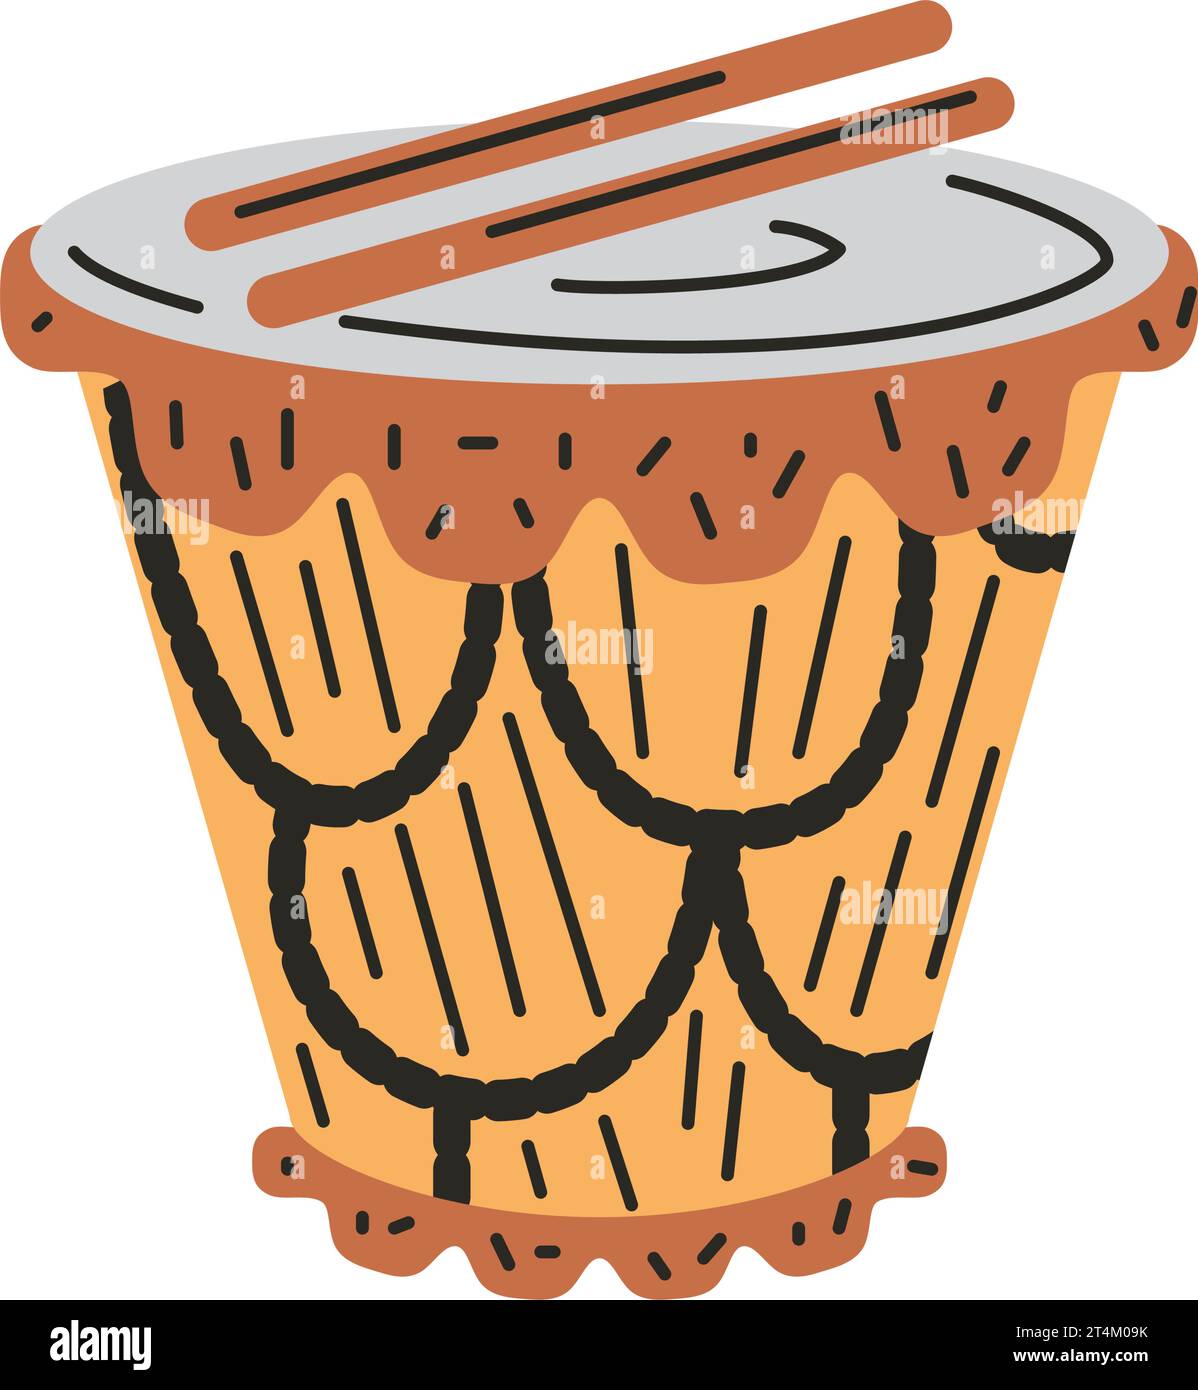 musique de batterie légendaire vallenato Illustration de Vecteur